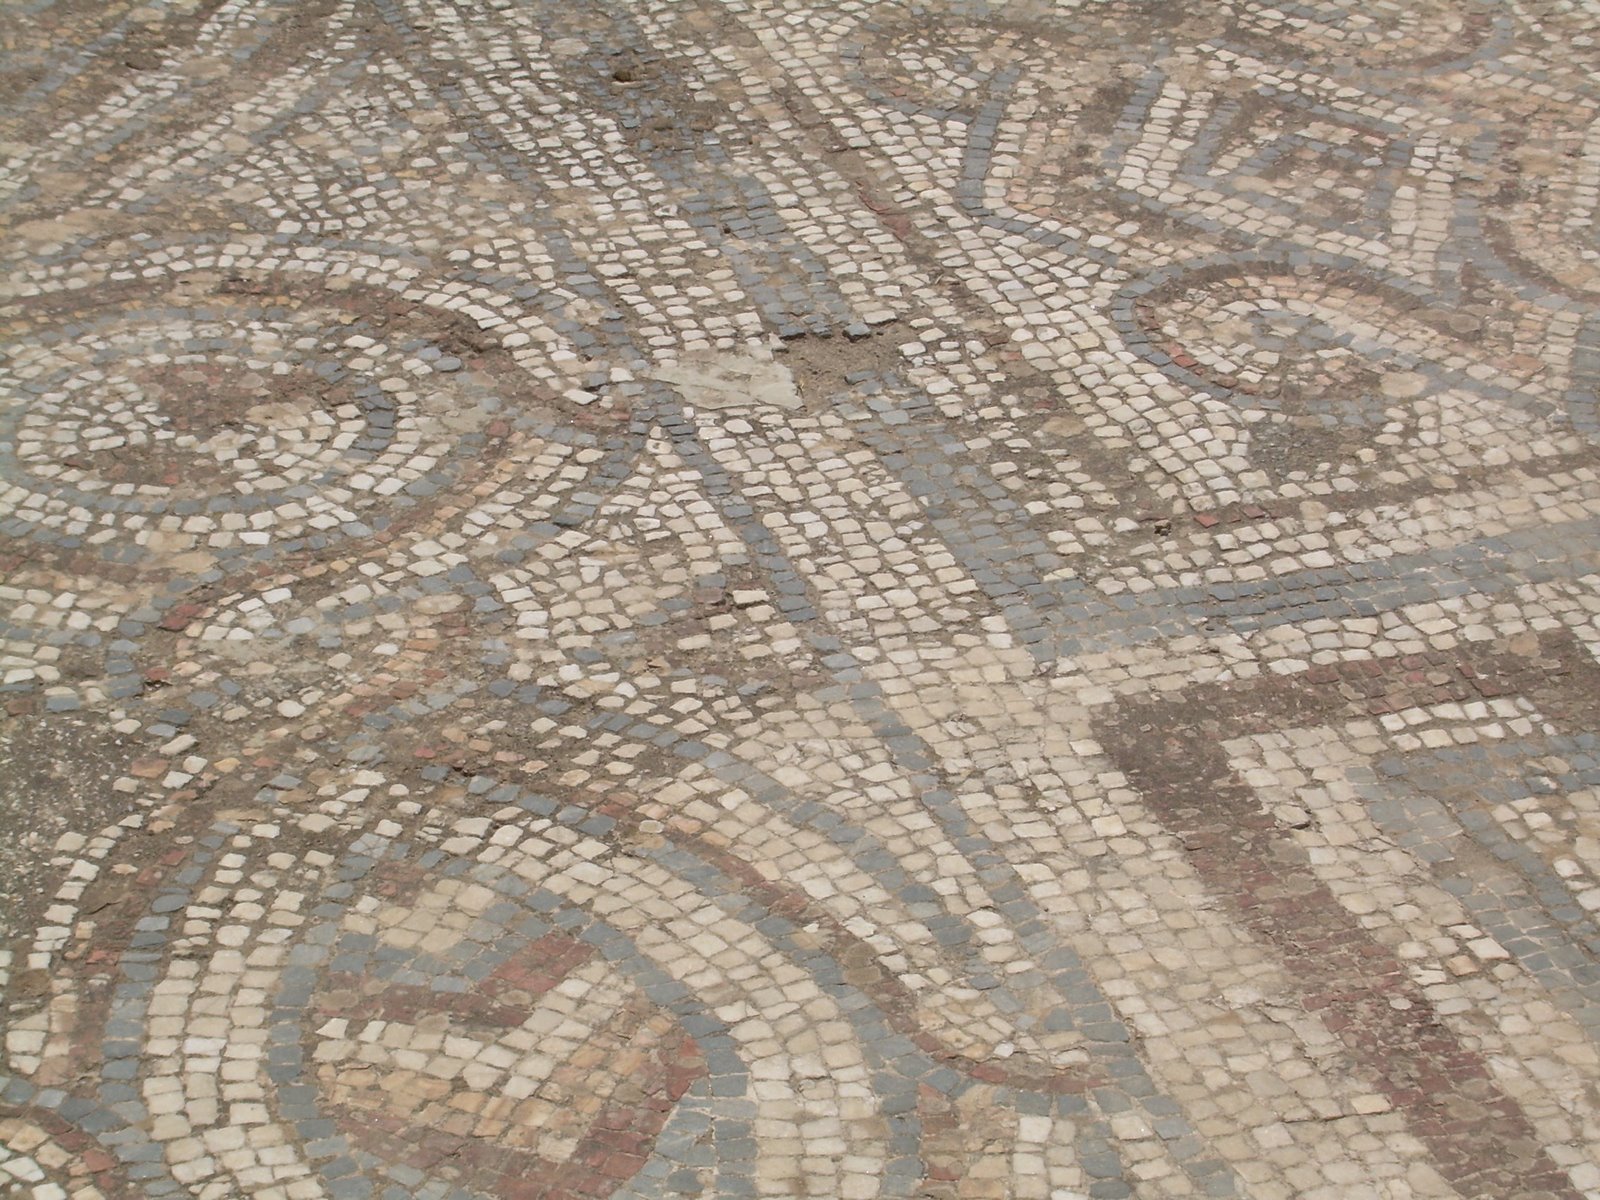 [Mosaic+in+Ephesus.JPG]